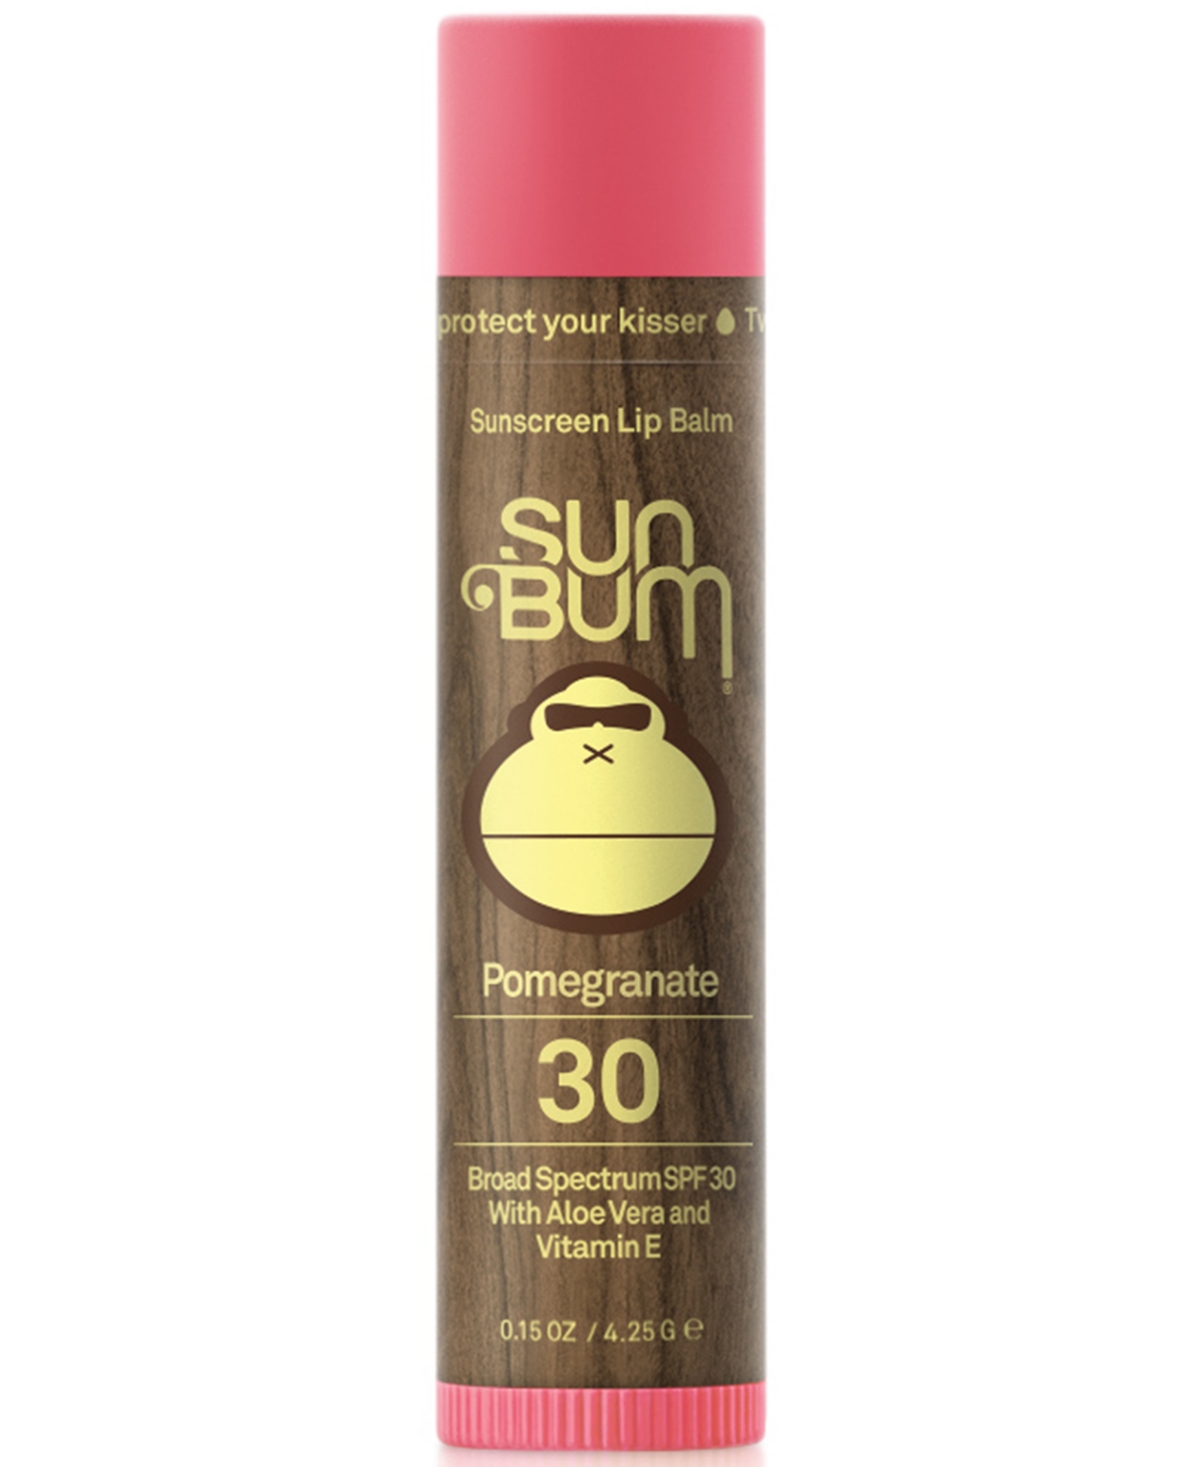 Sunscreen Lip Balm - Pomegranate